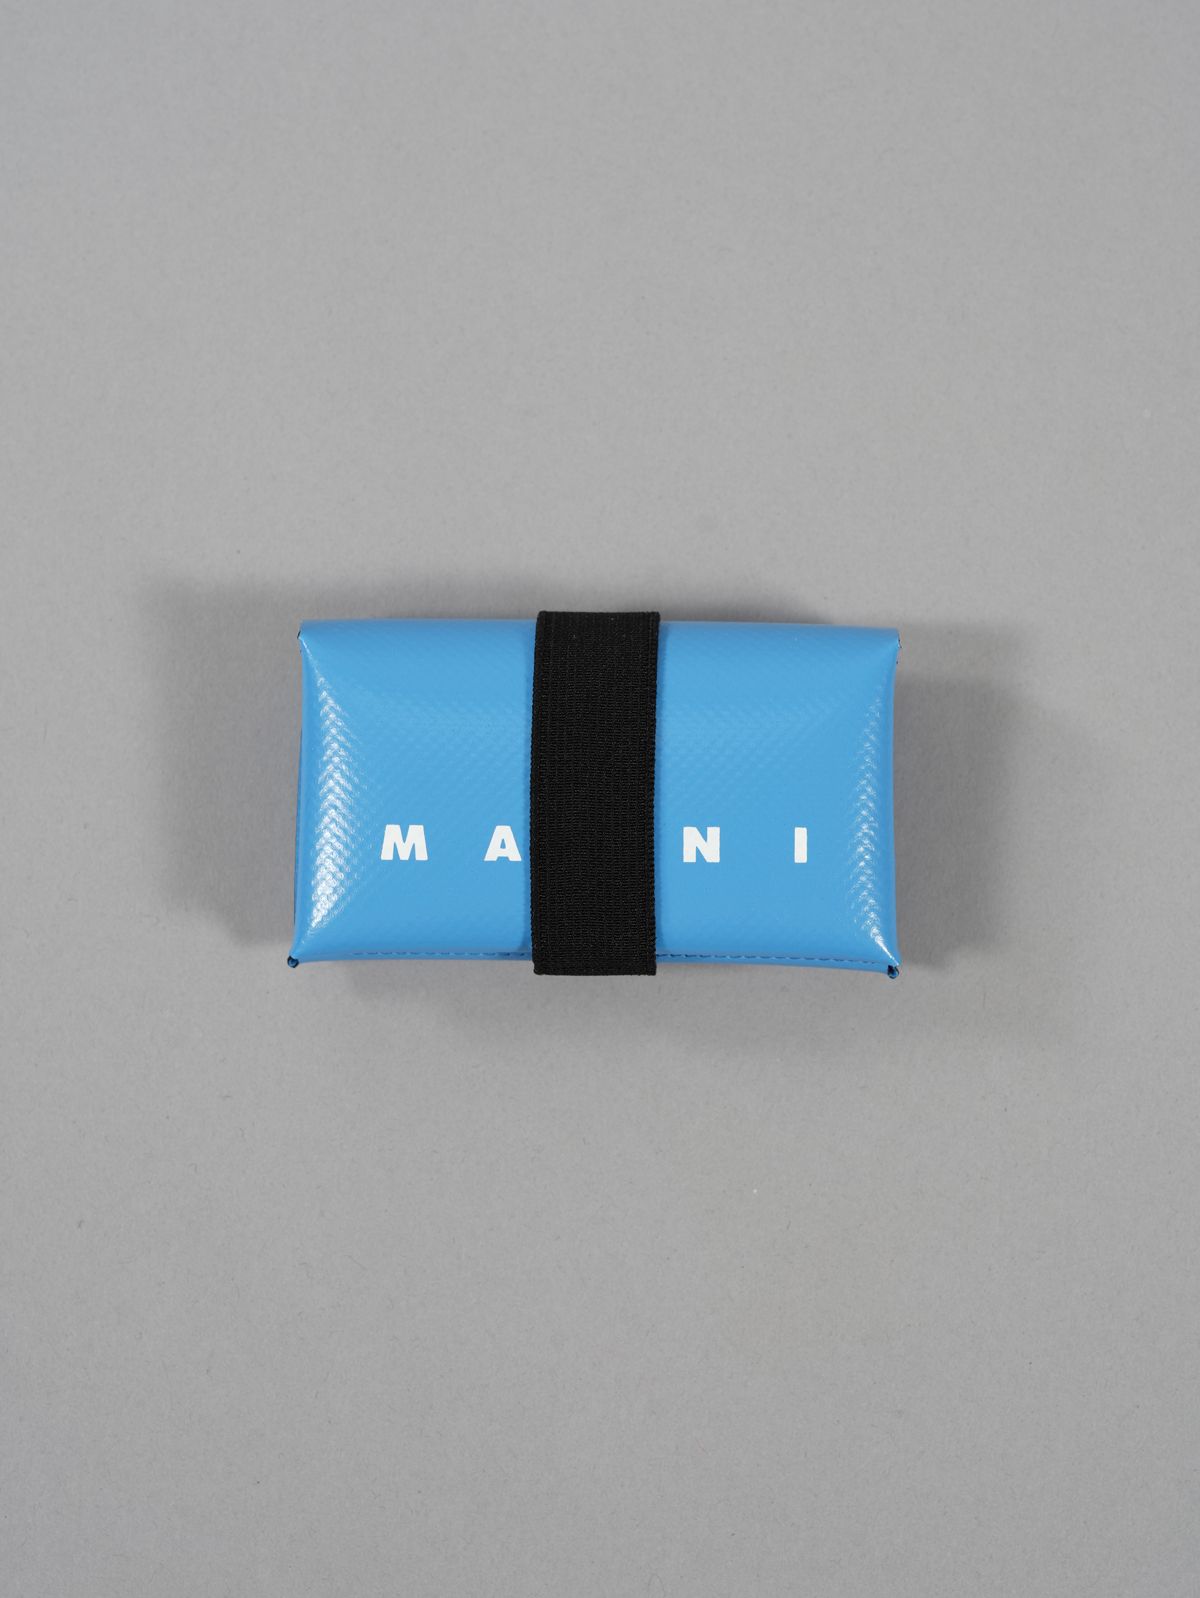 MARNI マルニ 財布 ウォレット コインケース ブルー オリガミ デザイン